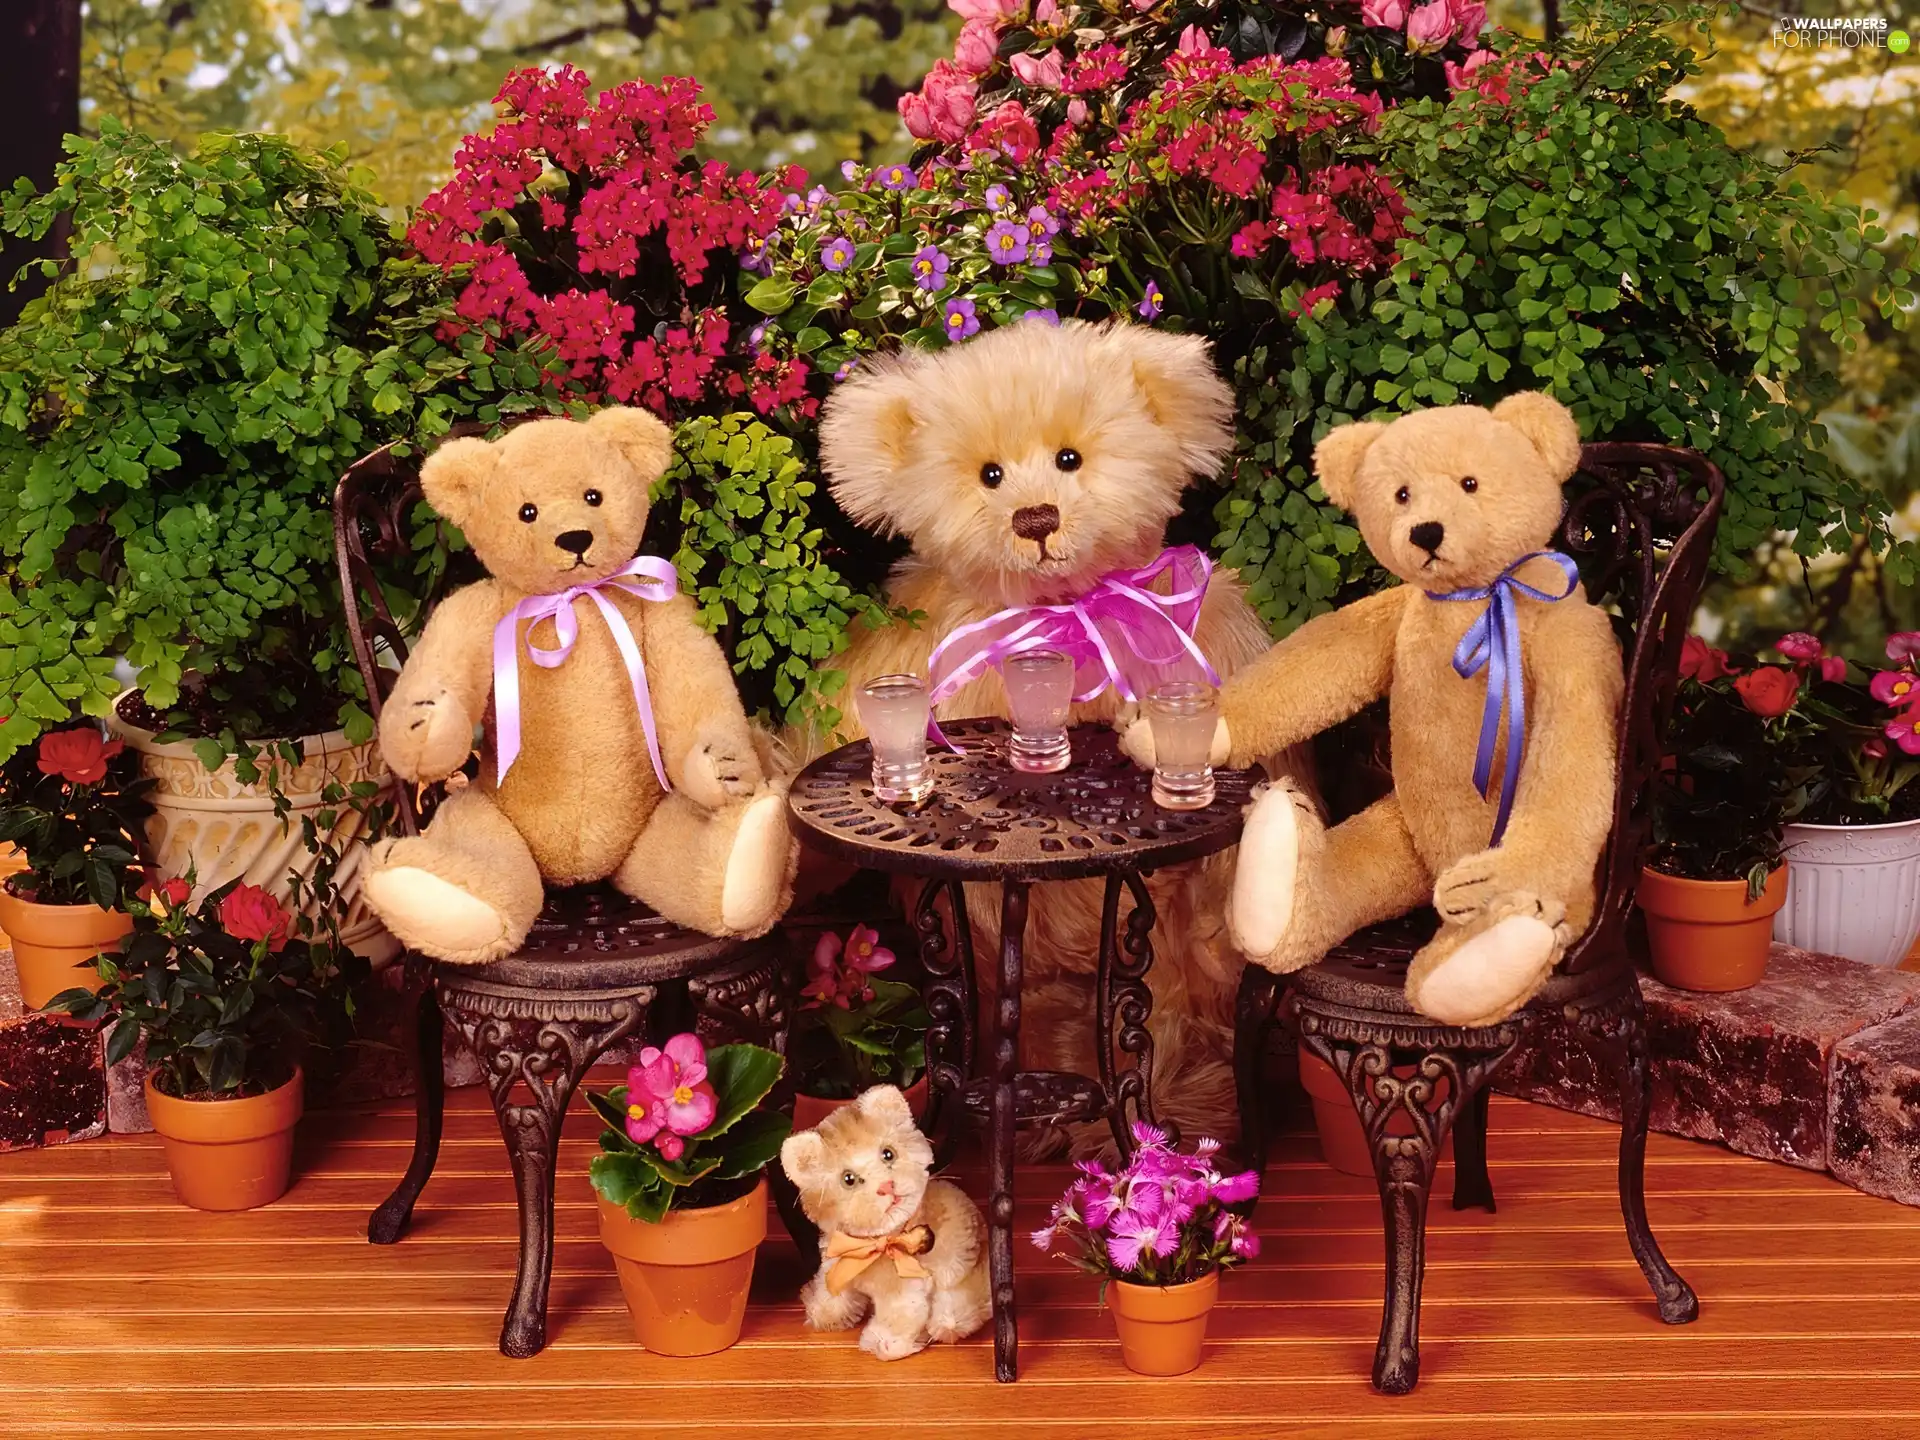 Flowers, bear, table